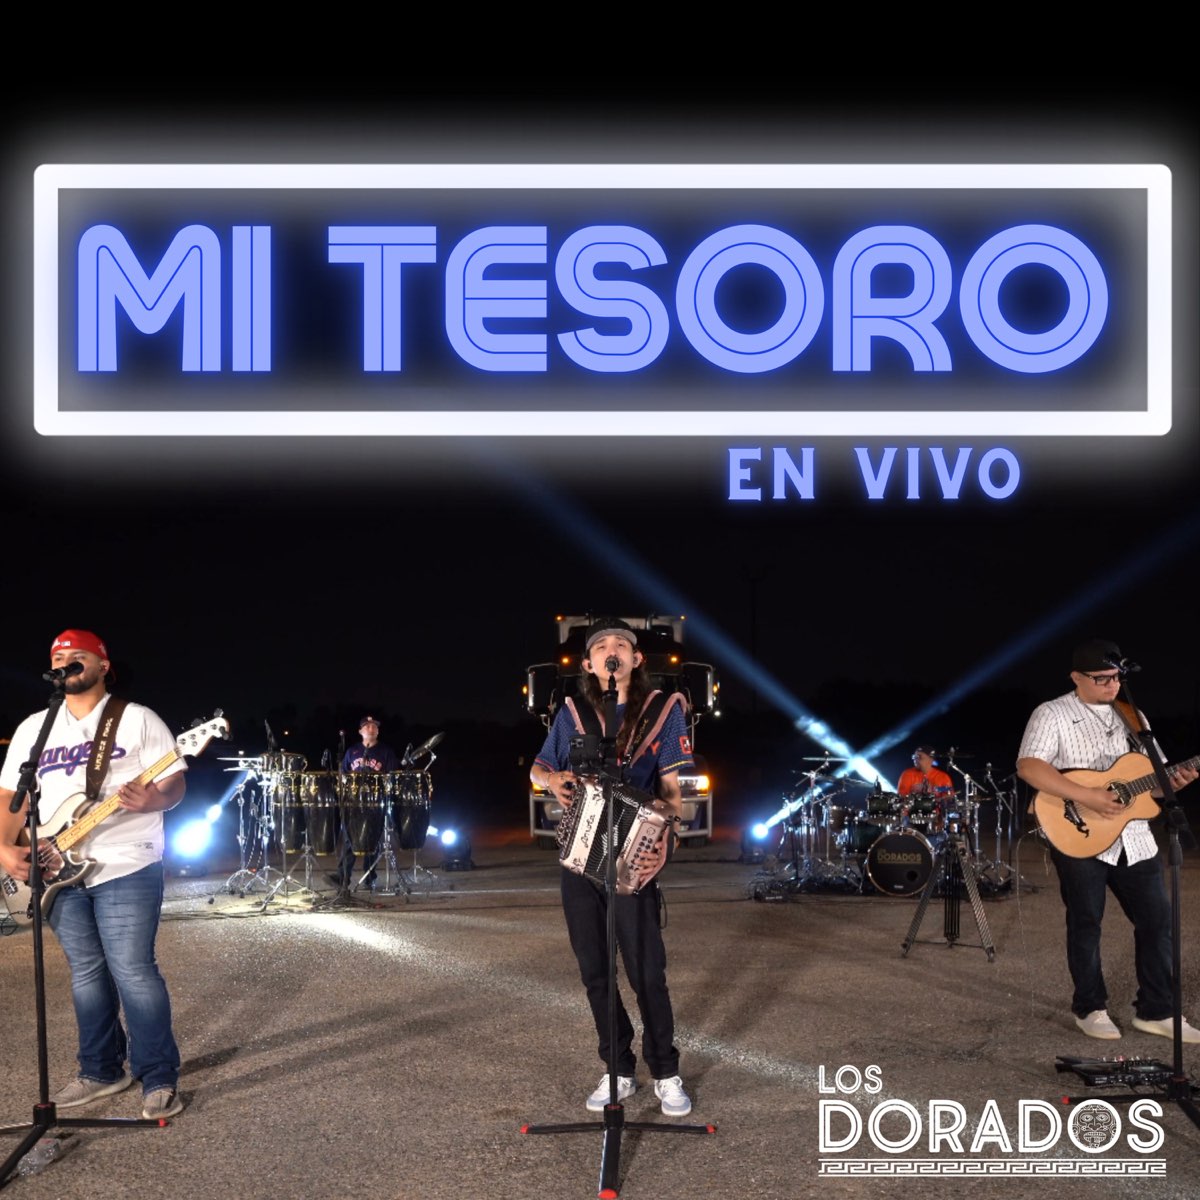 Mi Tesoro (En Vivo) - Single by Los Dorados on Apple Music